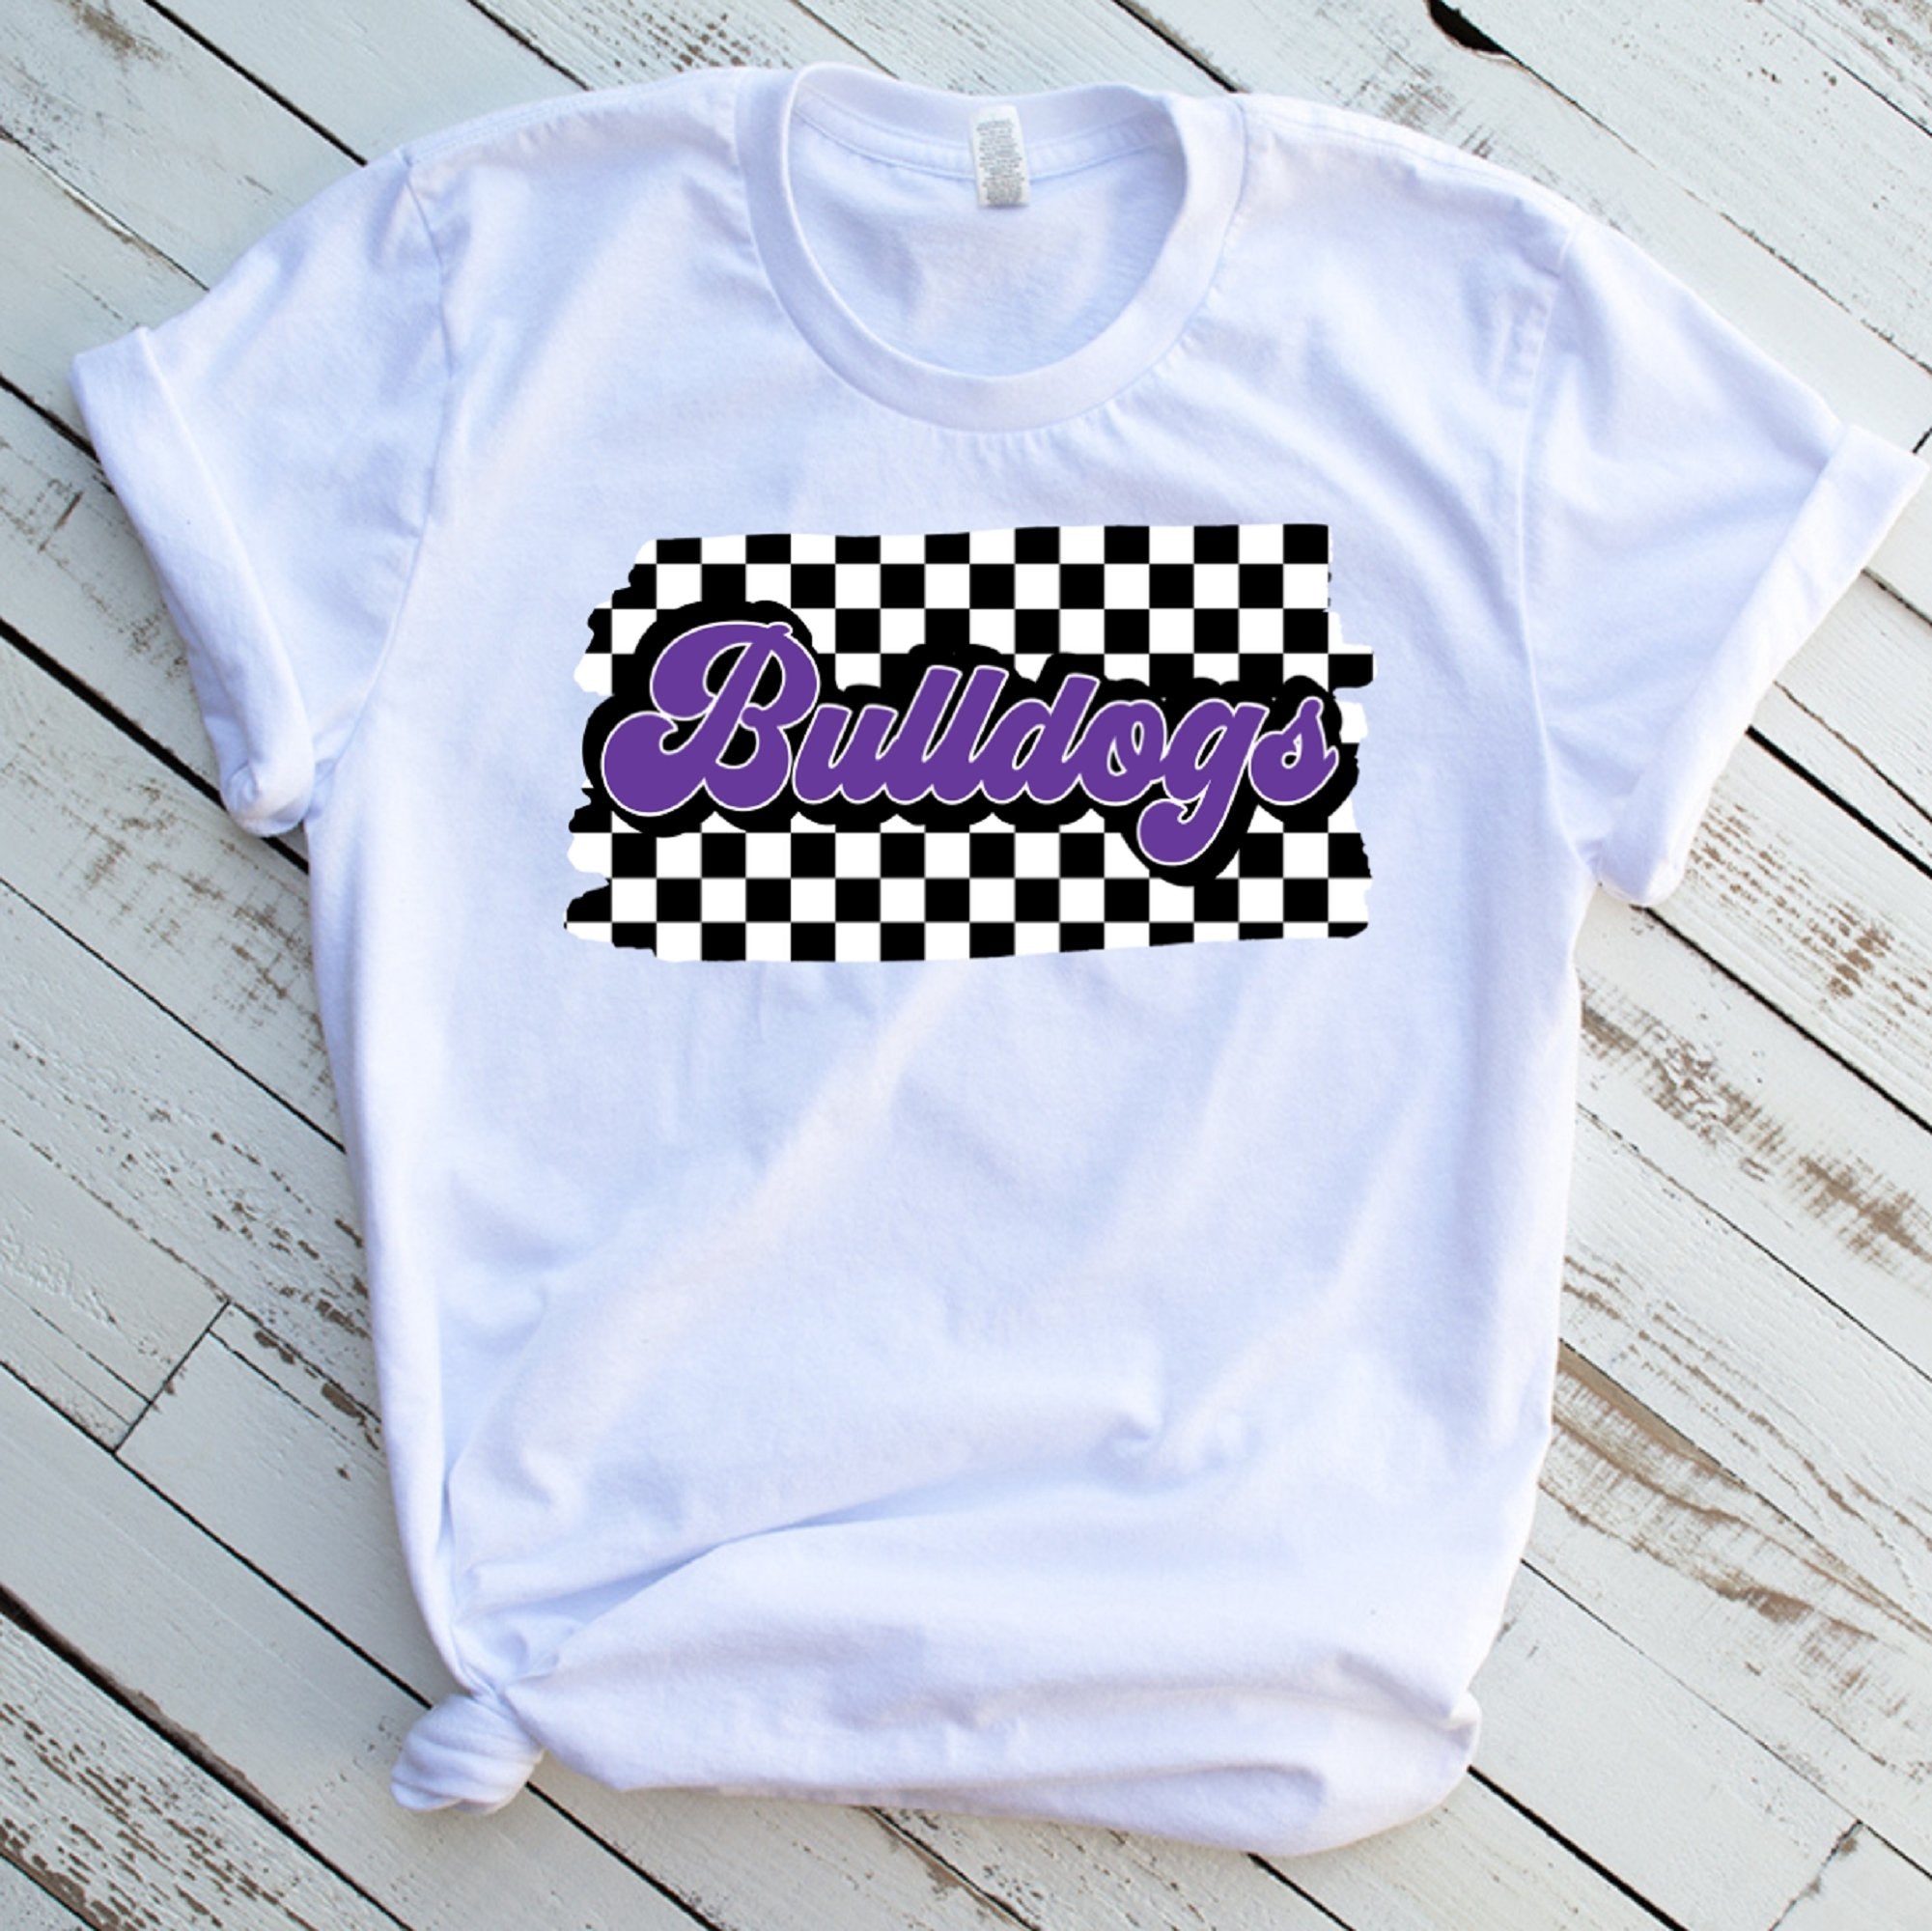 Bulldogs Checkered Unisex T-Shirt - Trendznmore